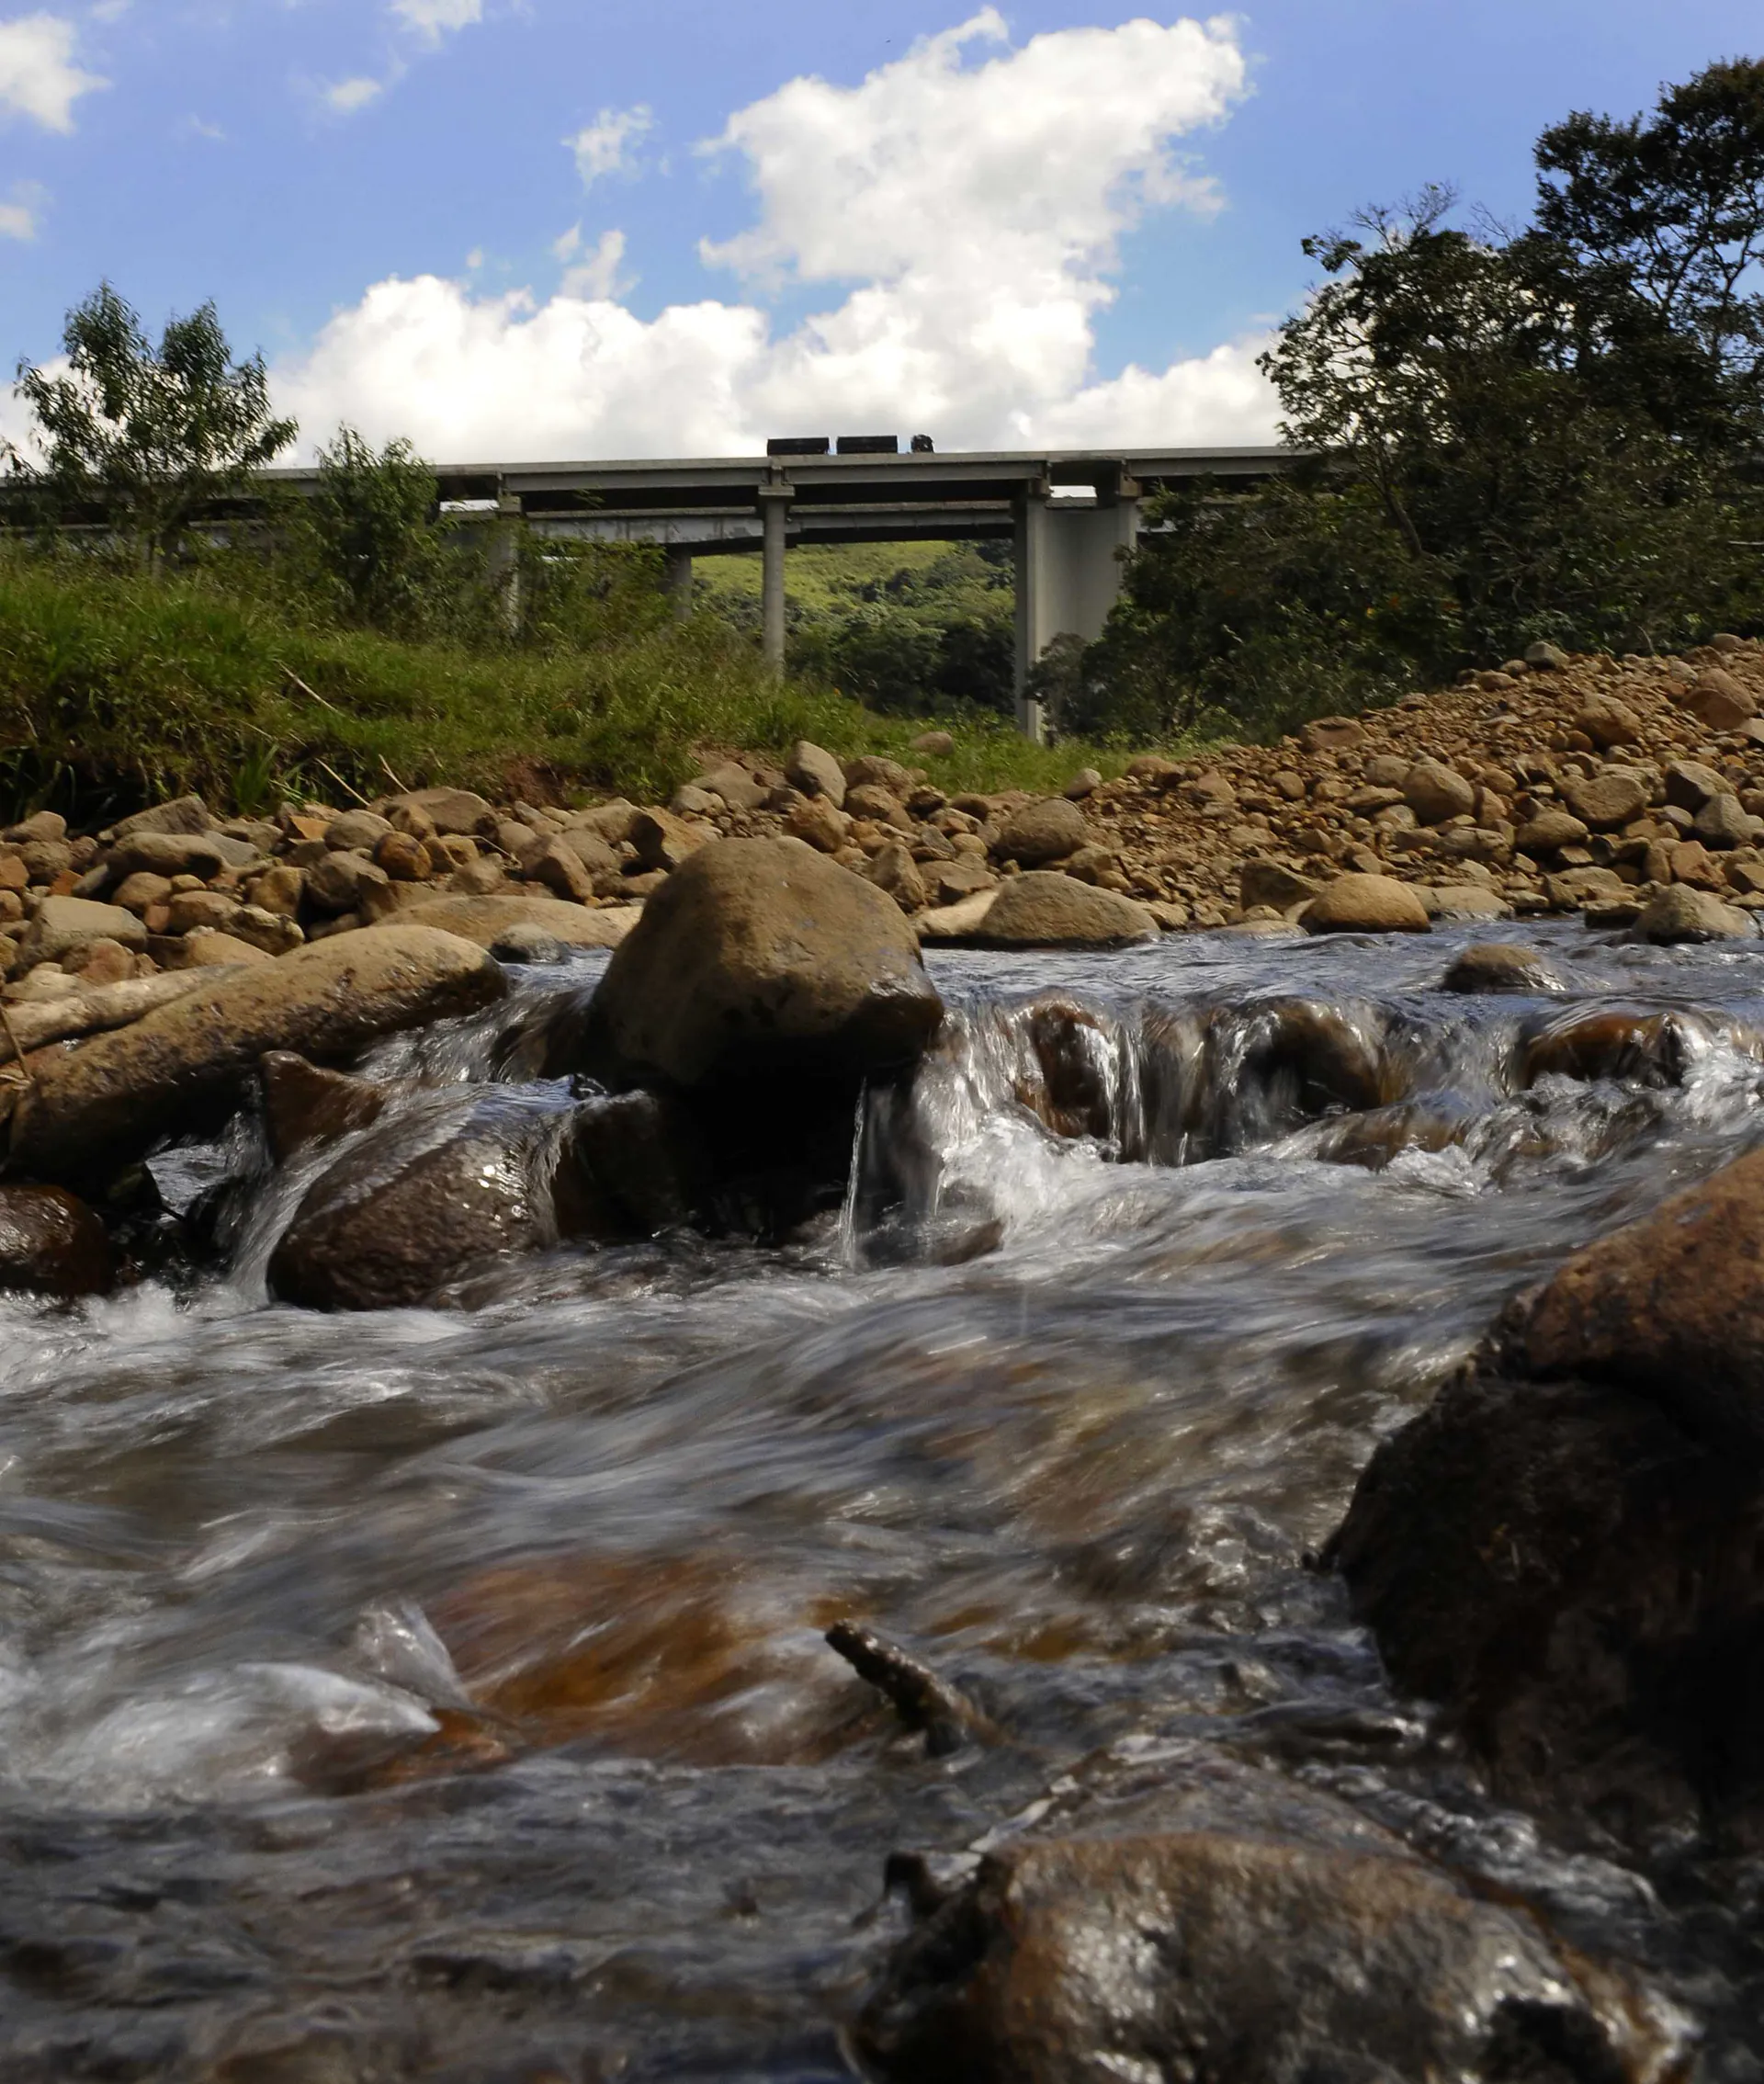 Pedras marrons em um riacho com uma ponte ao fundo